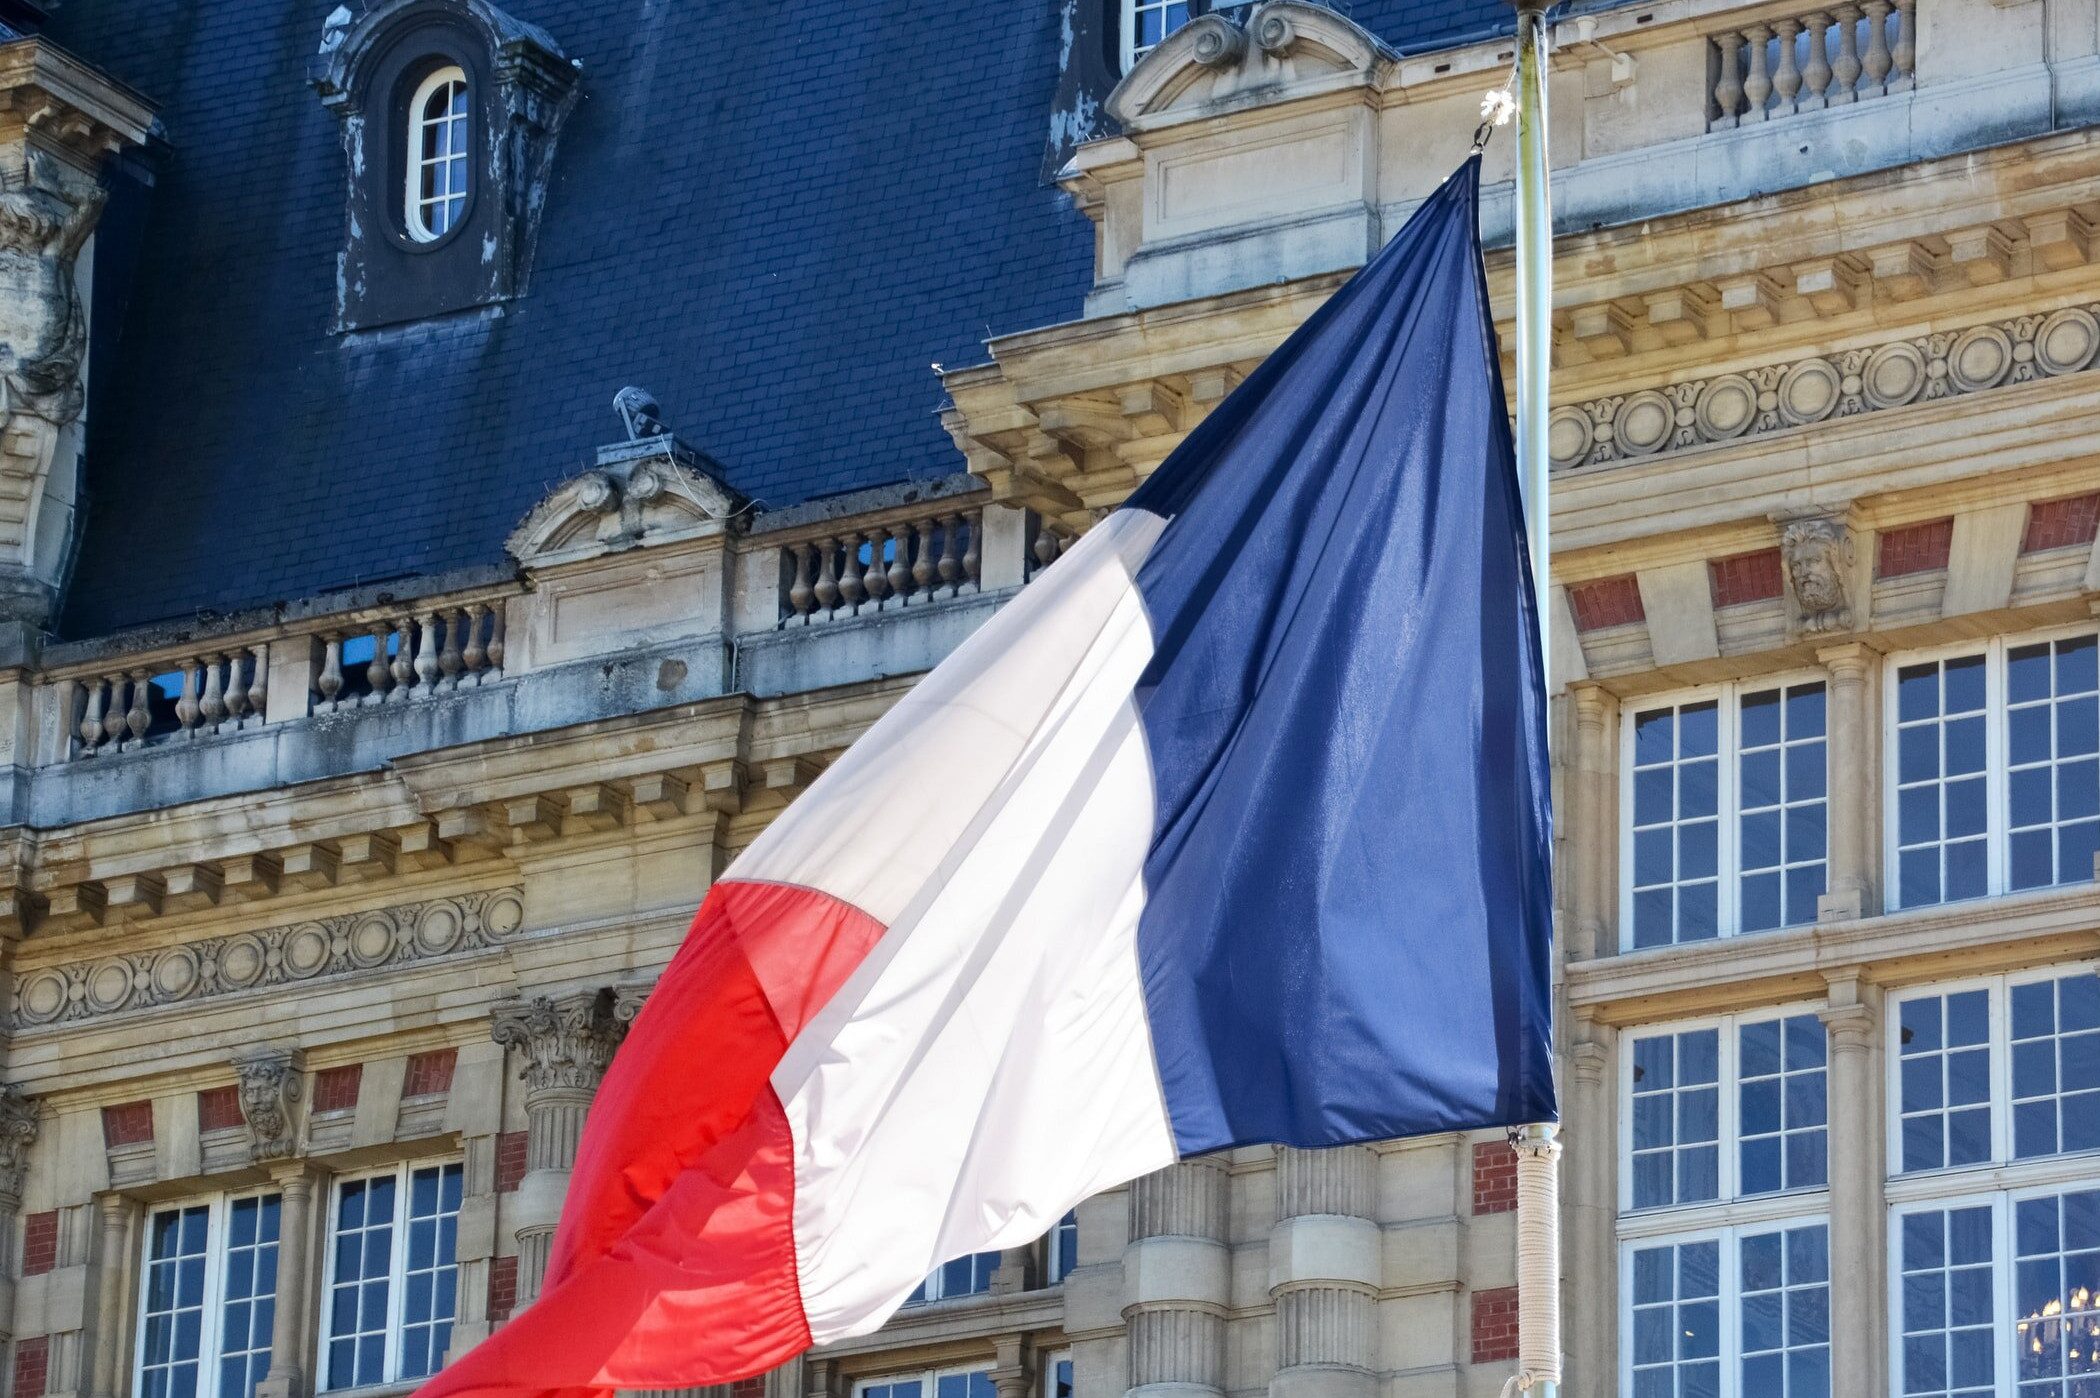 Ֆրանսիան Ադրբեջանին կոչ է անում կատարել իր միջազգային պարտավորությունները. Ֆրանսիայի ԱԳՆ-ն՝ հսկիչ-անցագրային կետ ստեղծելու մասին